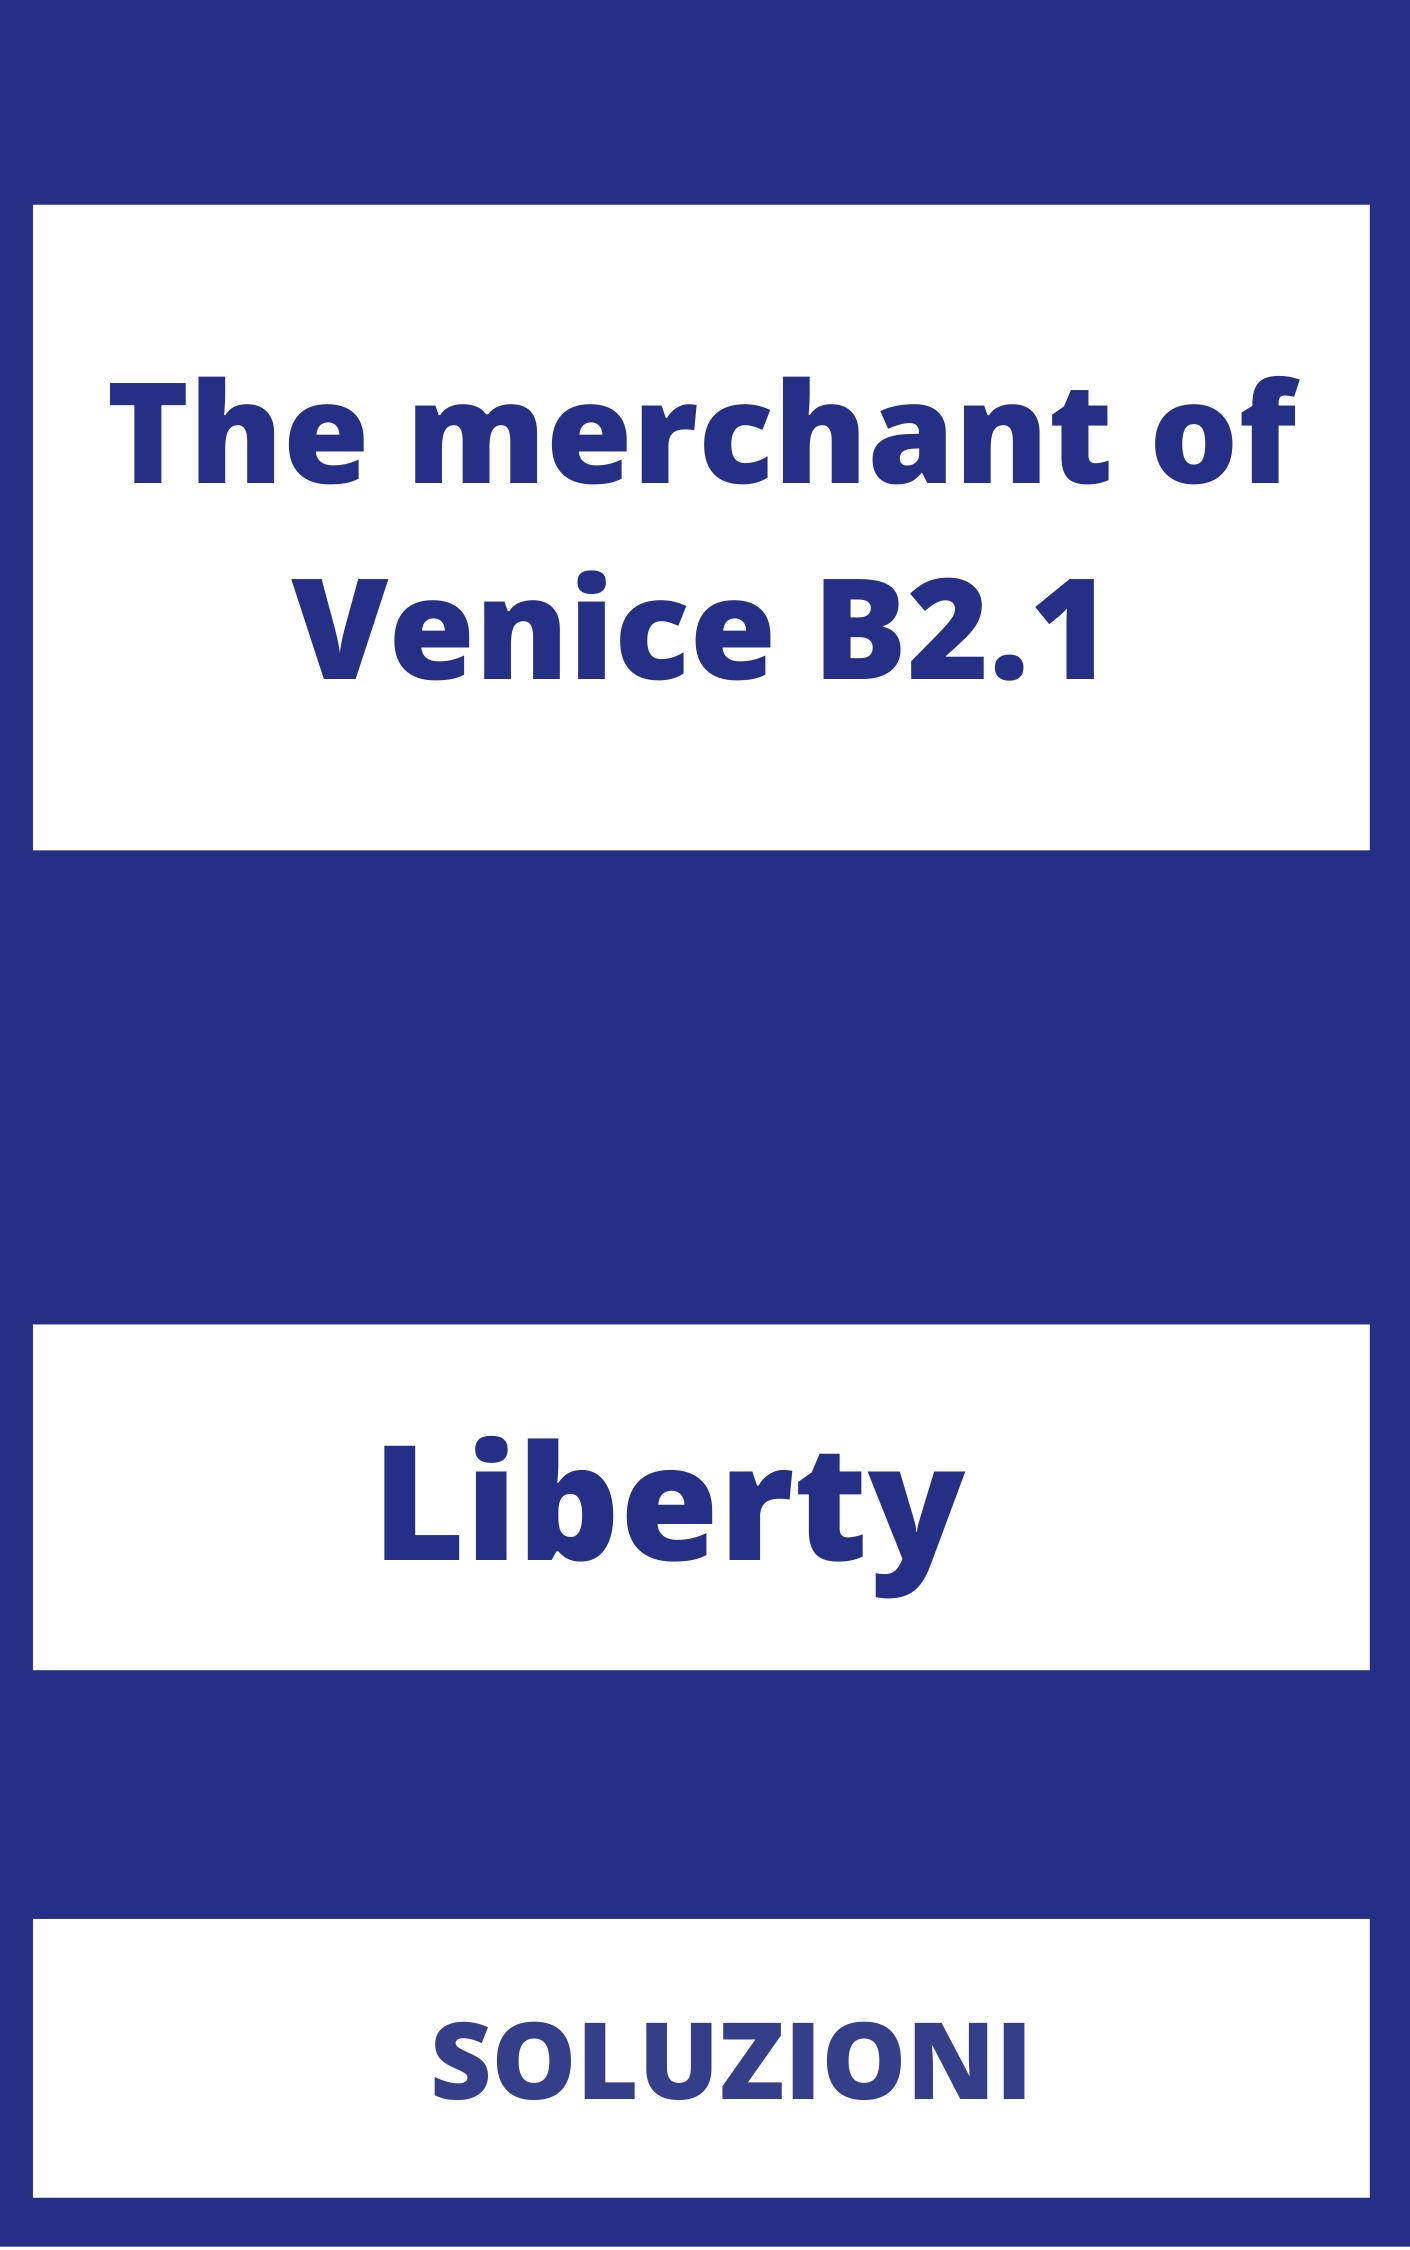 The merchant of Venice B2.1 Soluzioni